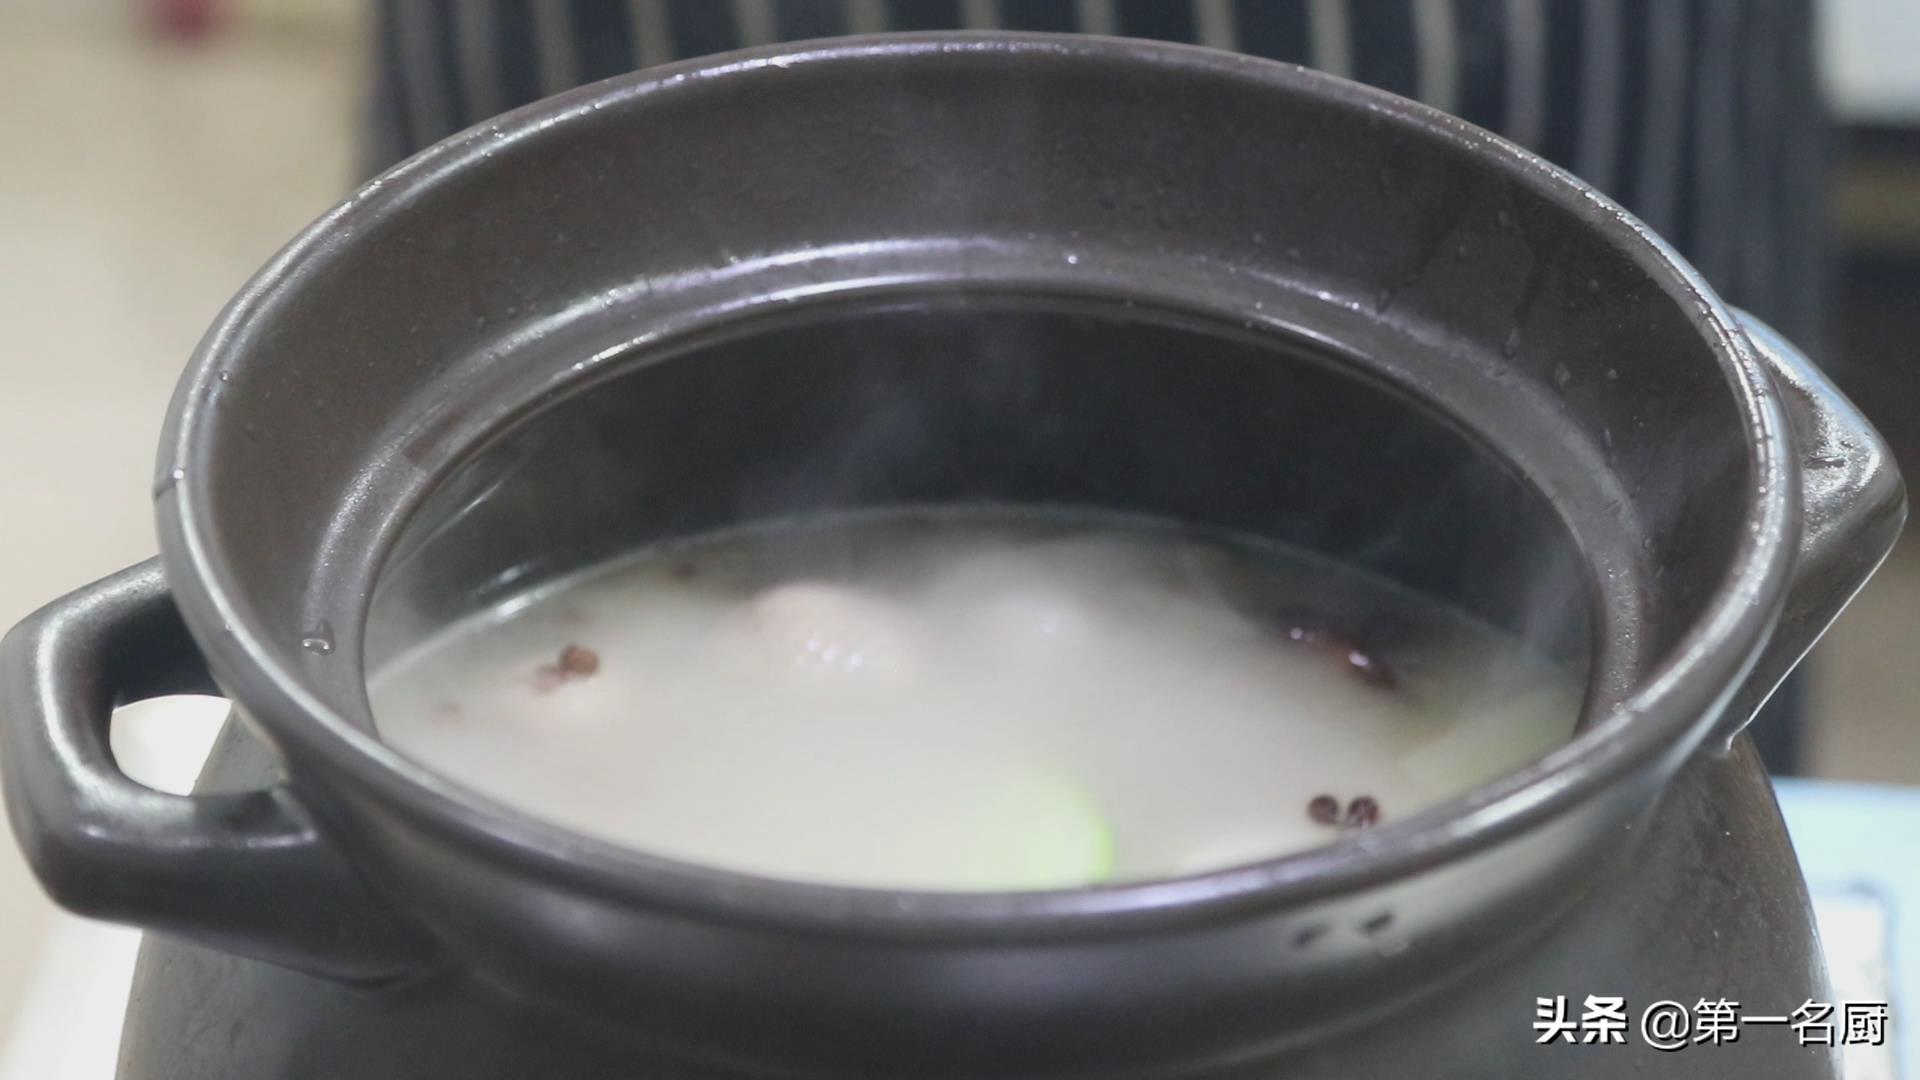 老鸭汤怎样炖才好喝？大厨教你老鸭汤的做法 ，简单营养又美味，收藏了